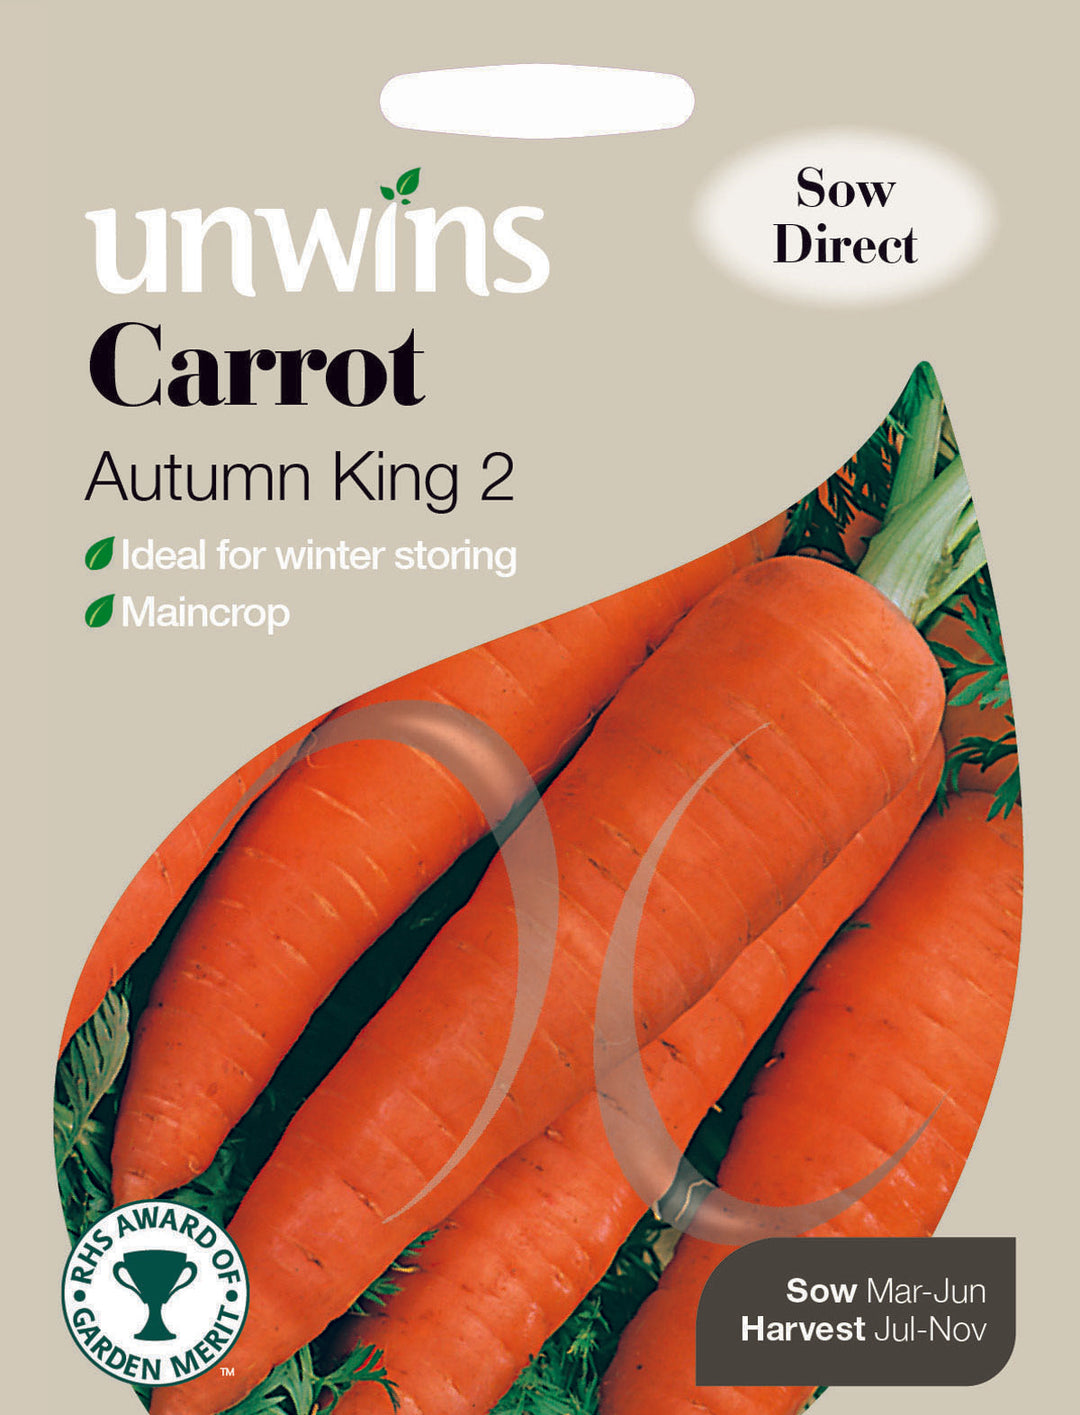 Carrot Autumn King 2